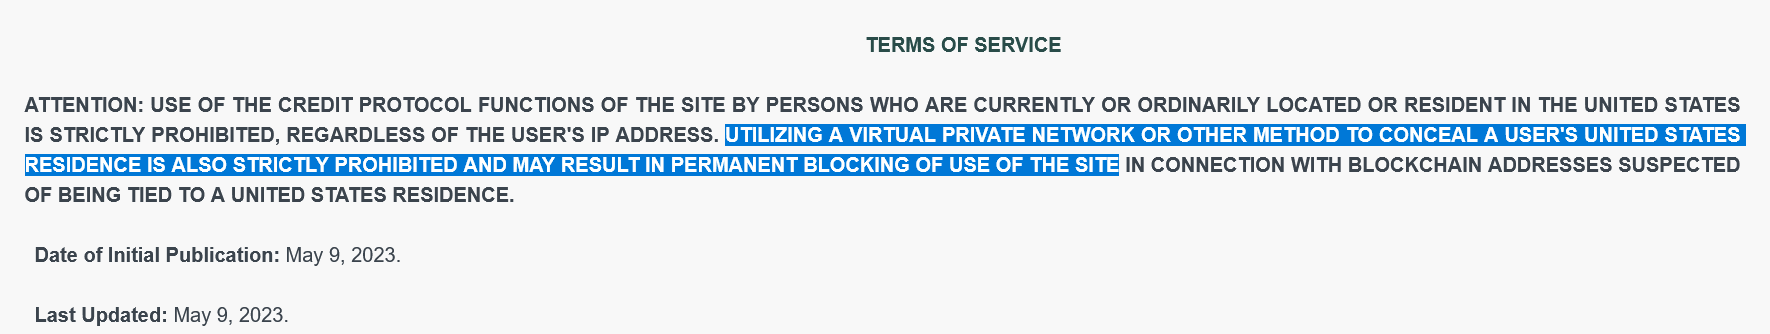 Điều khoản dịch vụ của Giao thức Spark cấm người dùng Hoa Kỳ sử dụng VPN để che giấu tình trạng cư trú tại Hoa Kỳ của họ. Nguồn: Spark Protocol